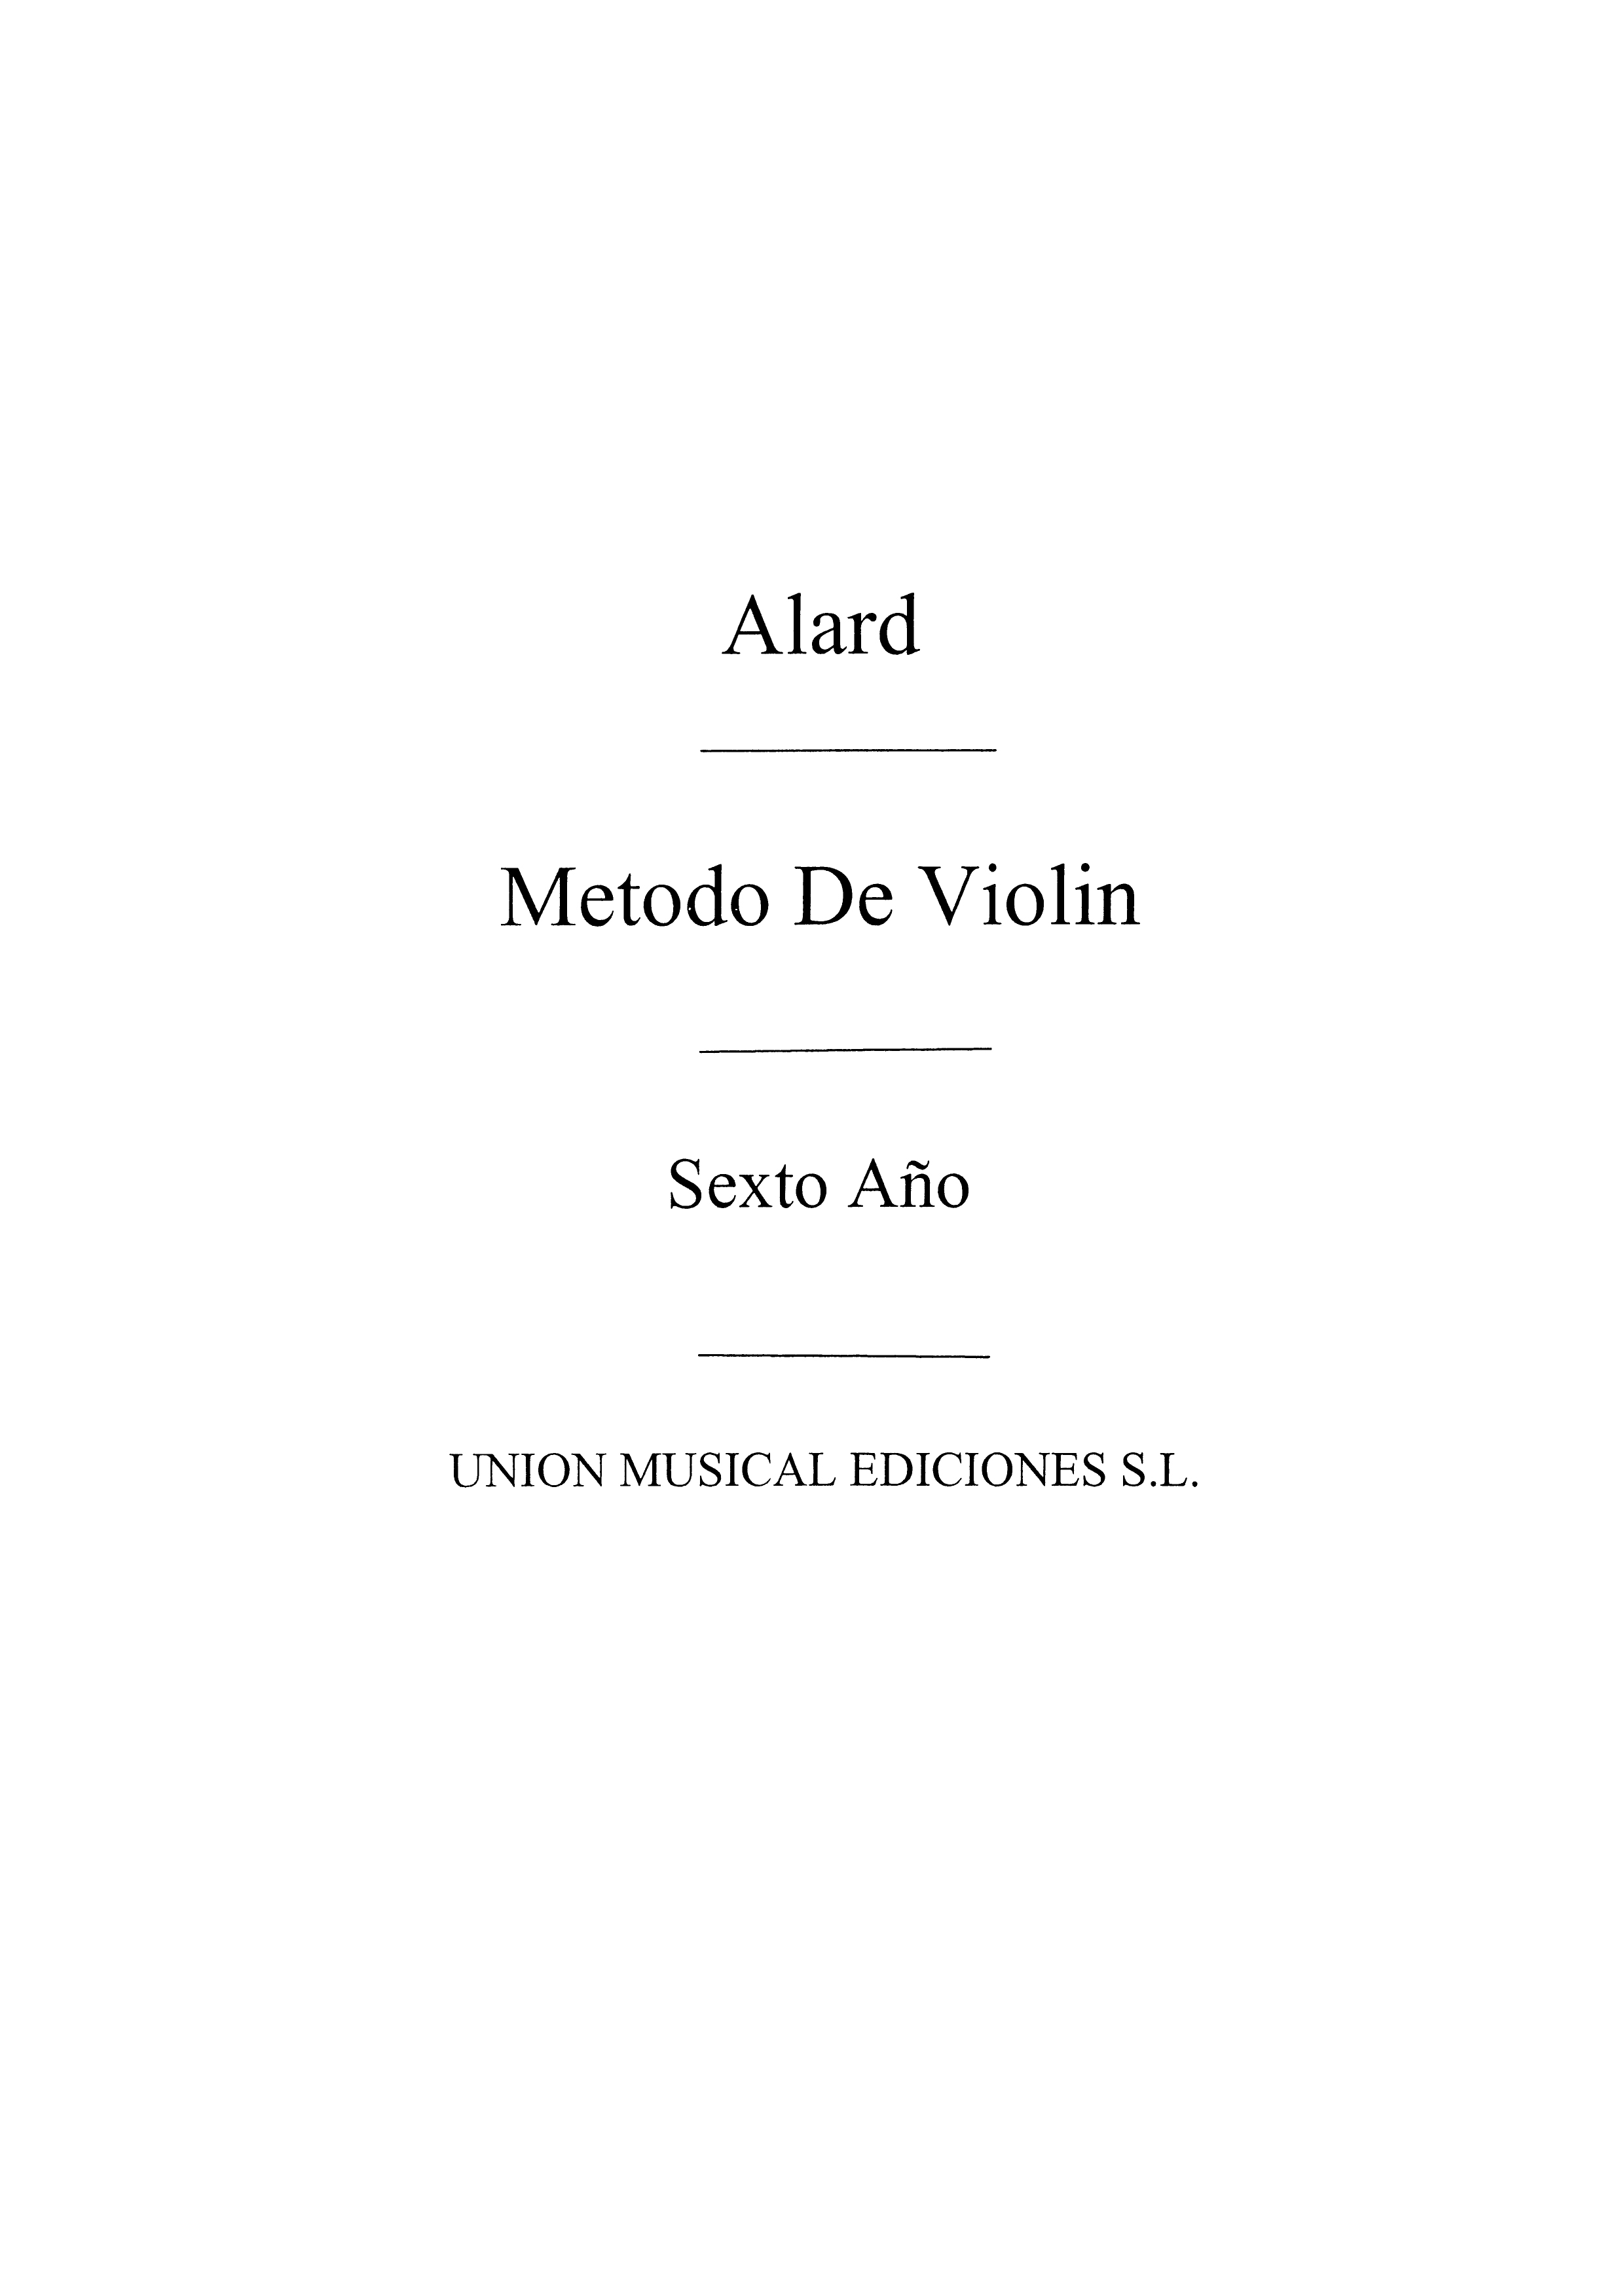 Alard: Metodo Violin Volume 6